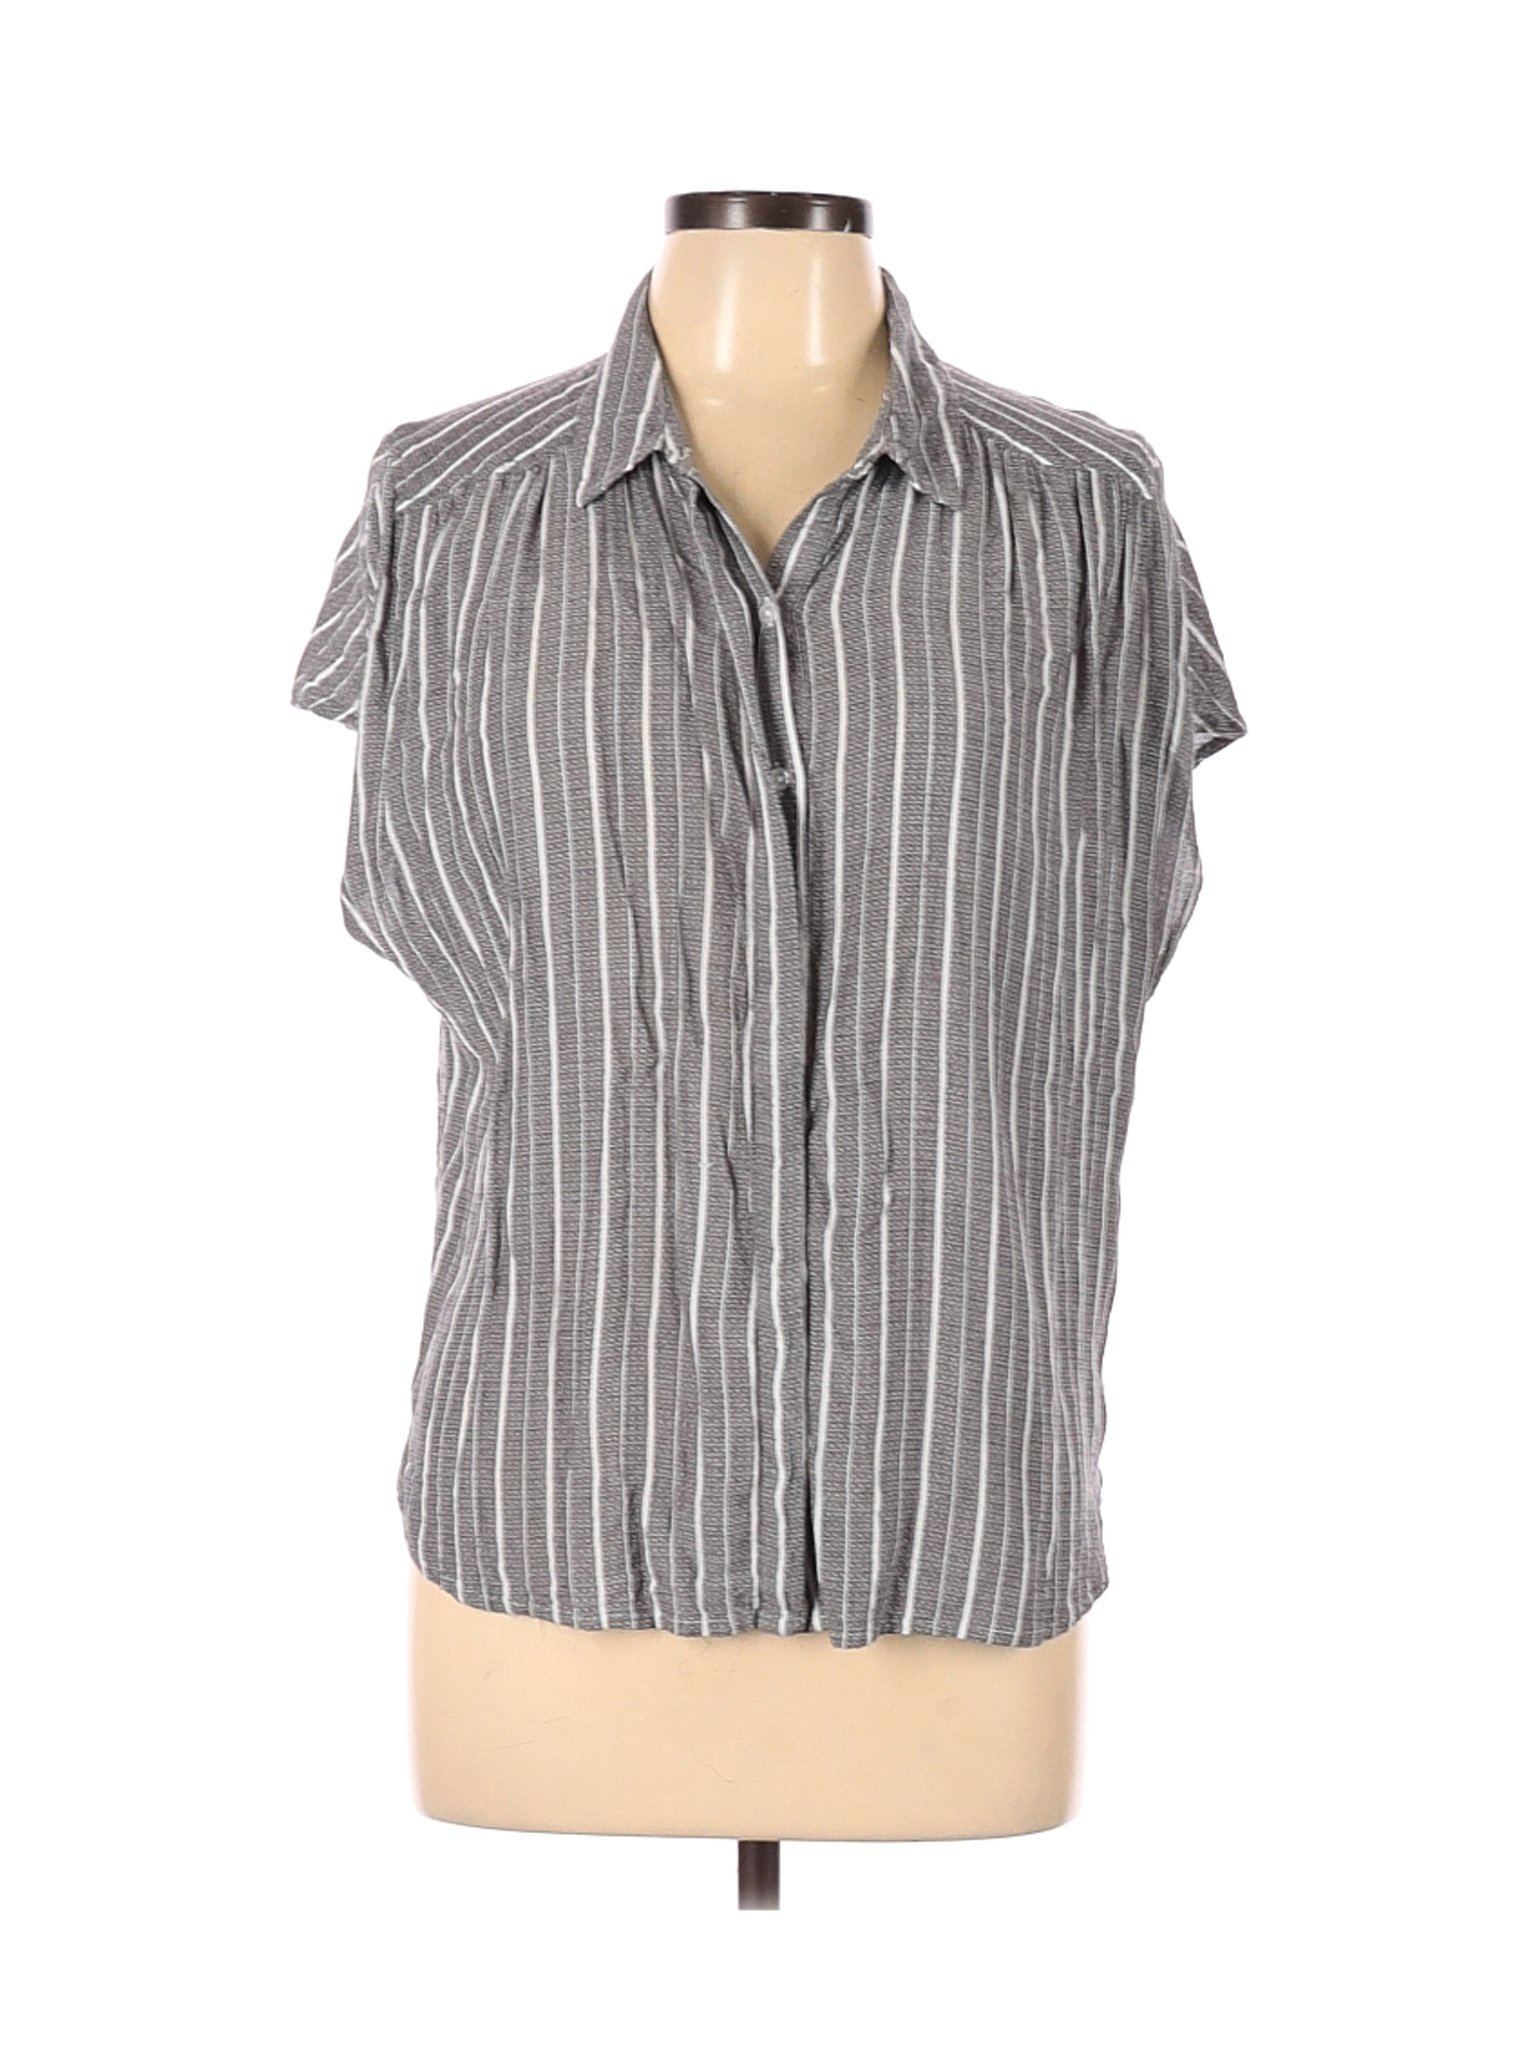 Lucky Brand Women Gray Short Sleeve Button-Down Shirt L | eBay